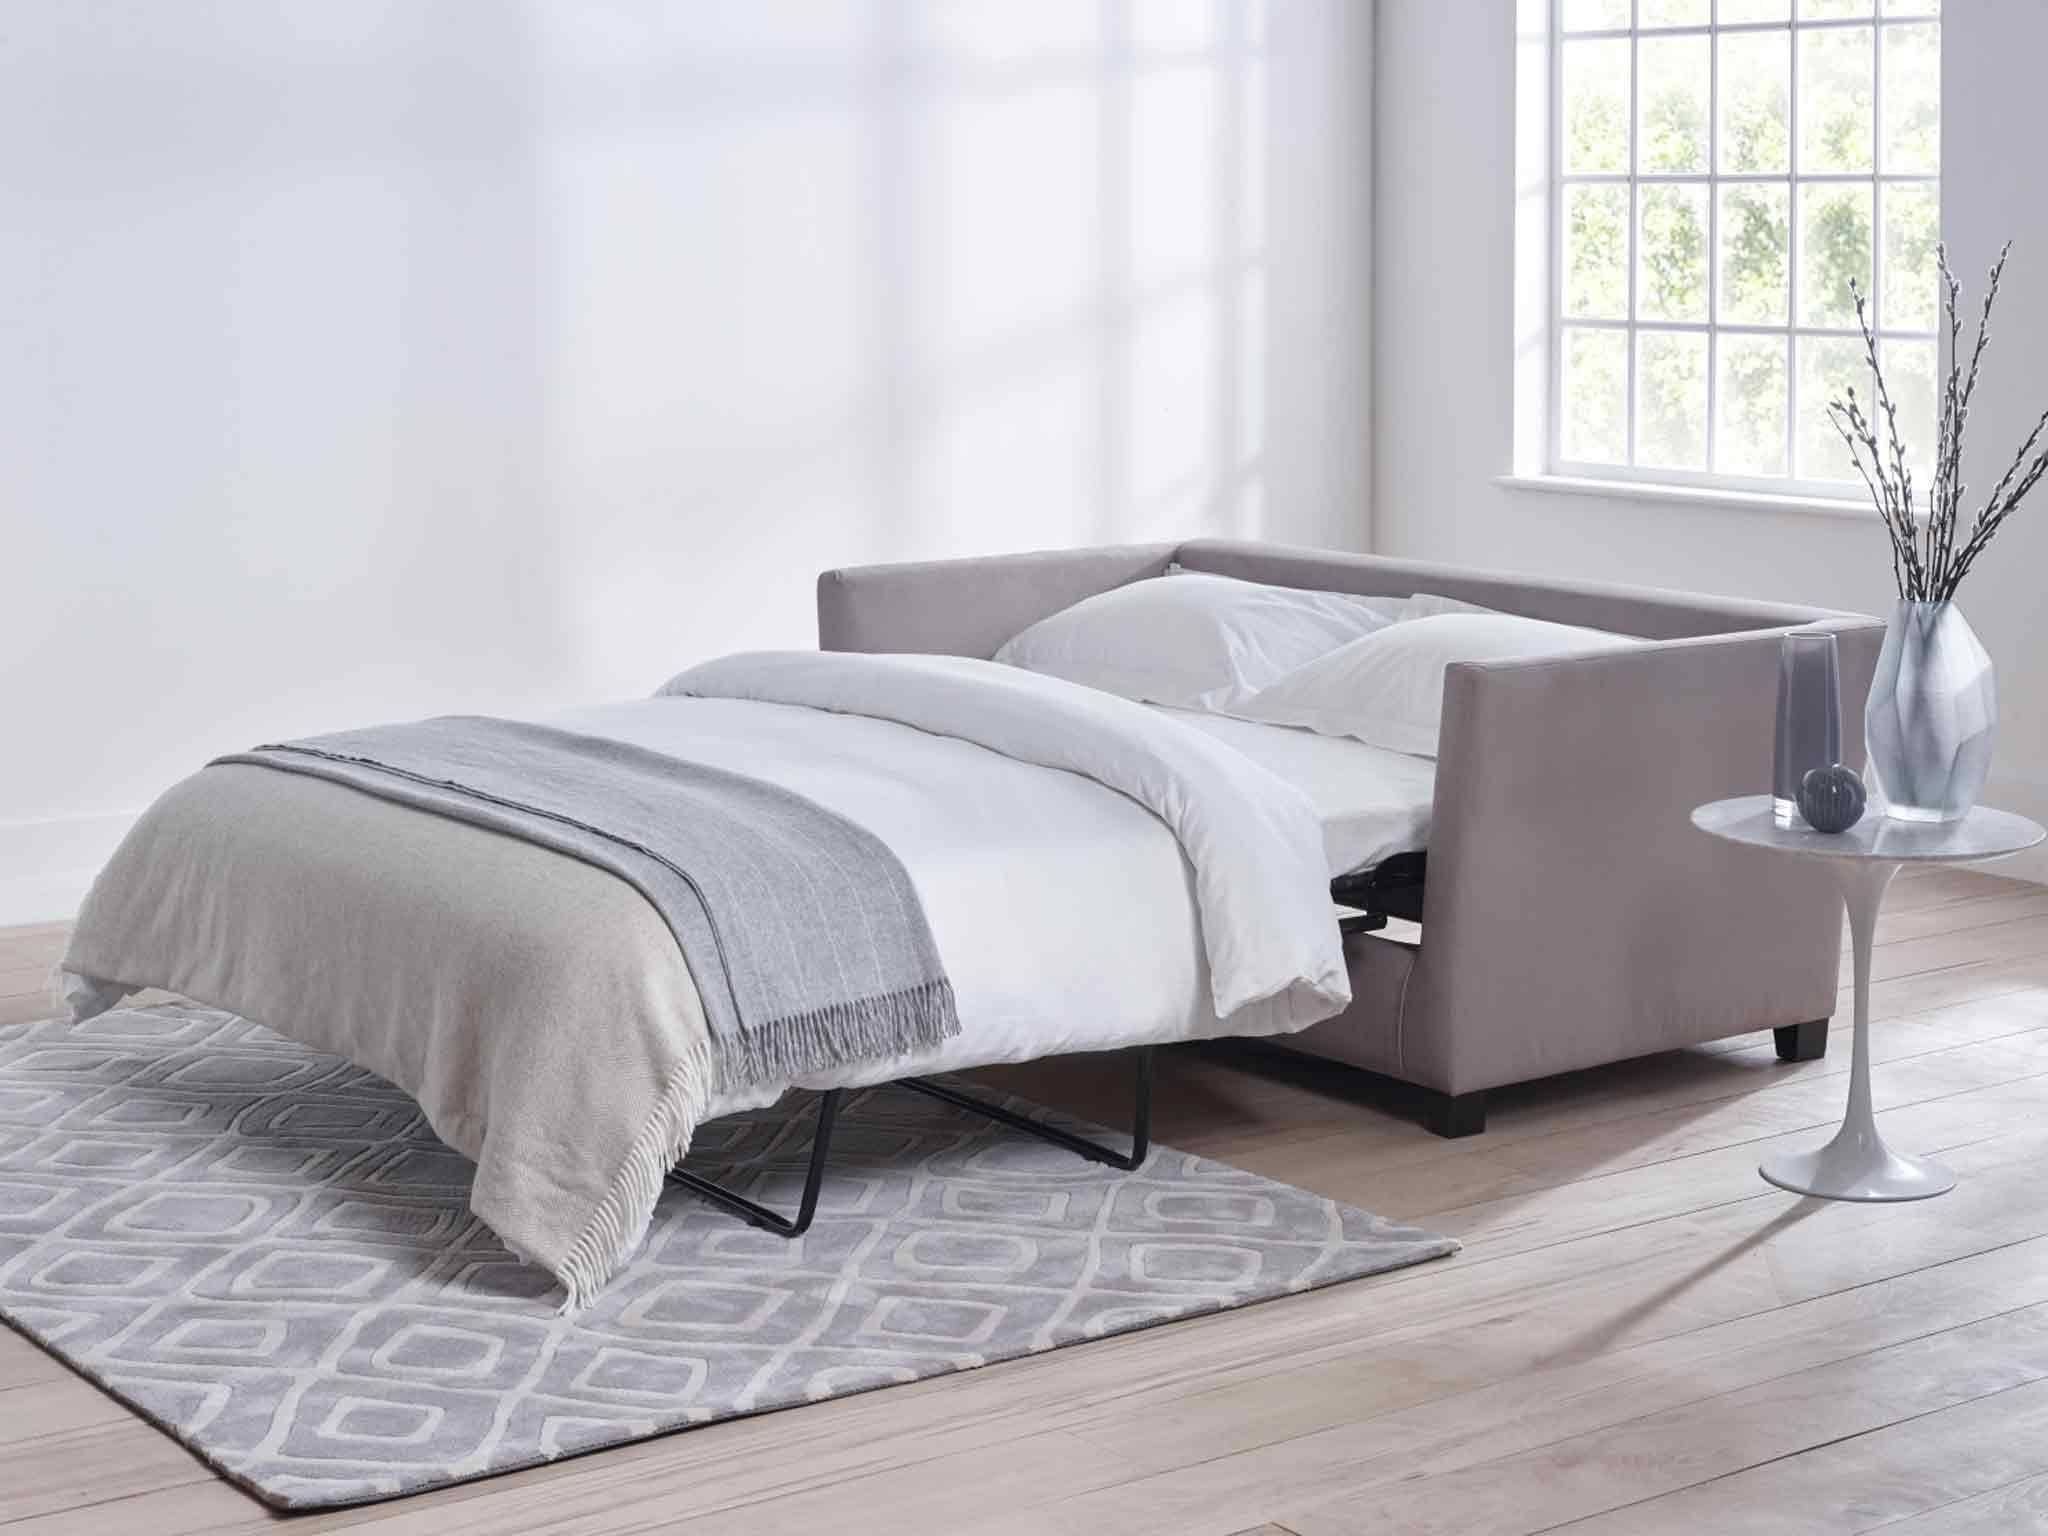 sheets sofa bed mattress